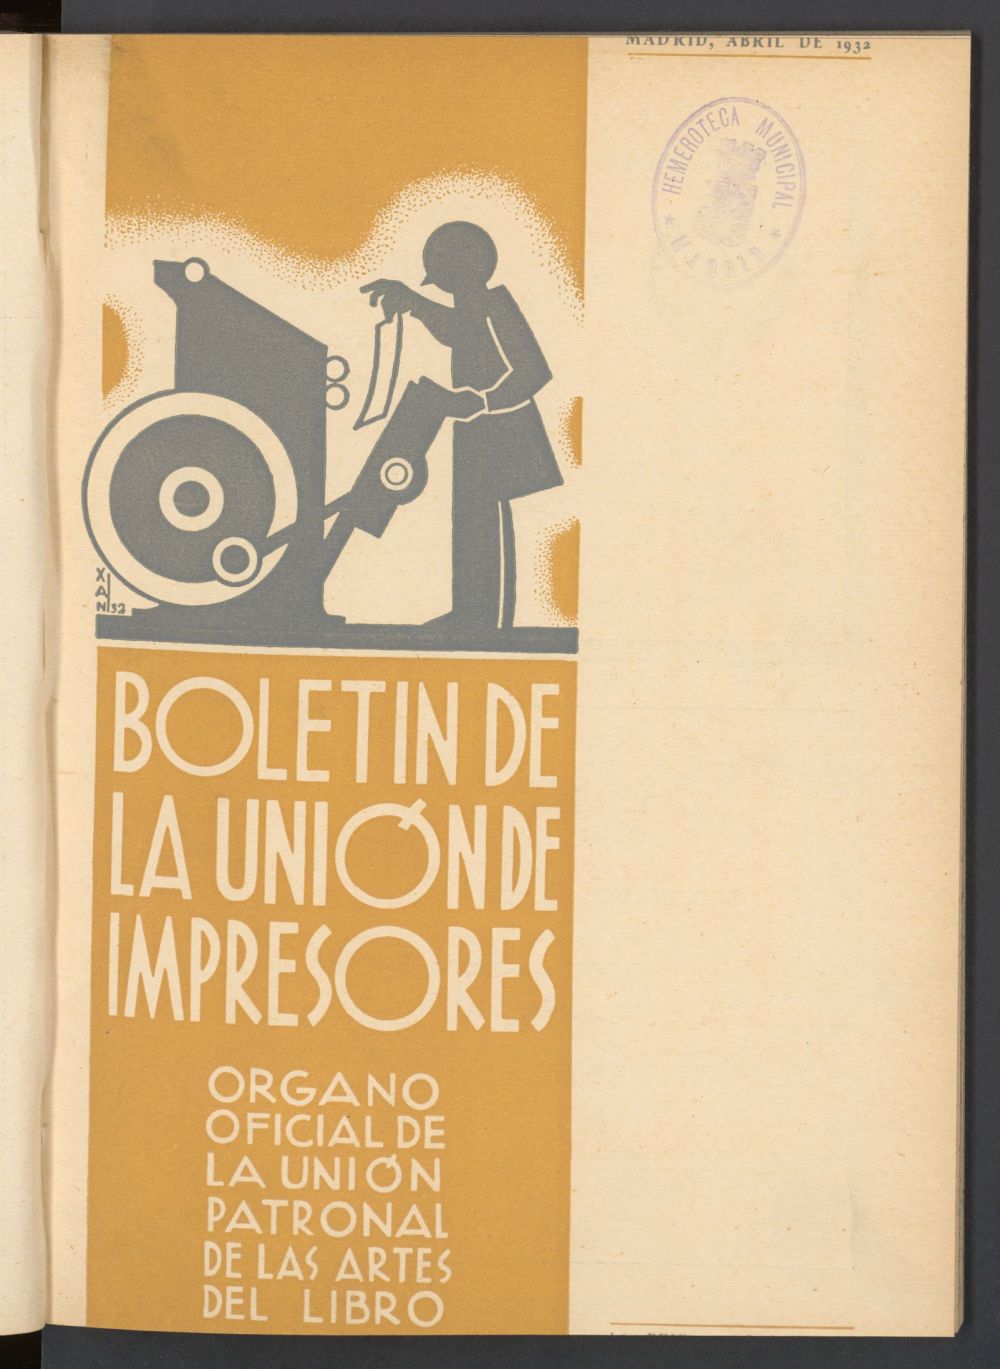 Boletn de la unin de impresores : rgano de la unin patronal de las artes del libro de abril de 1932